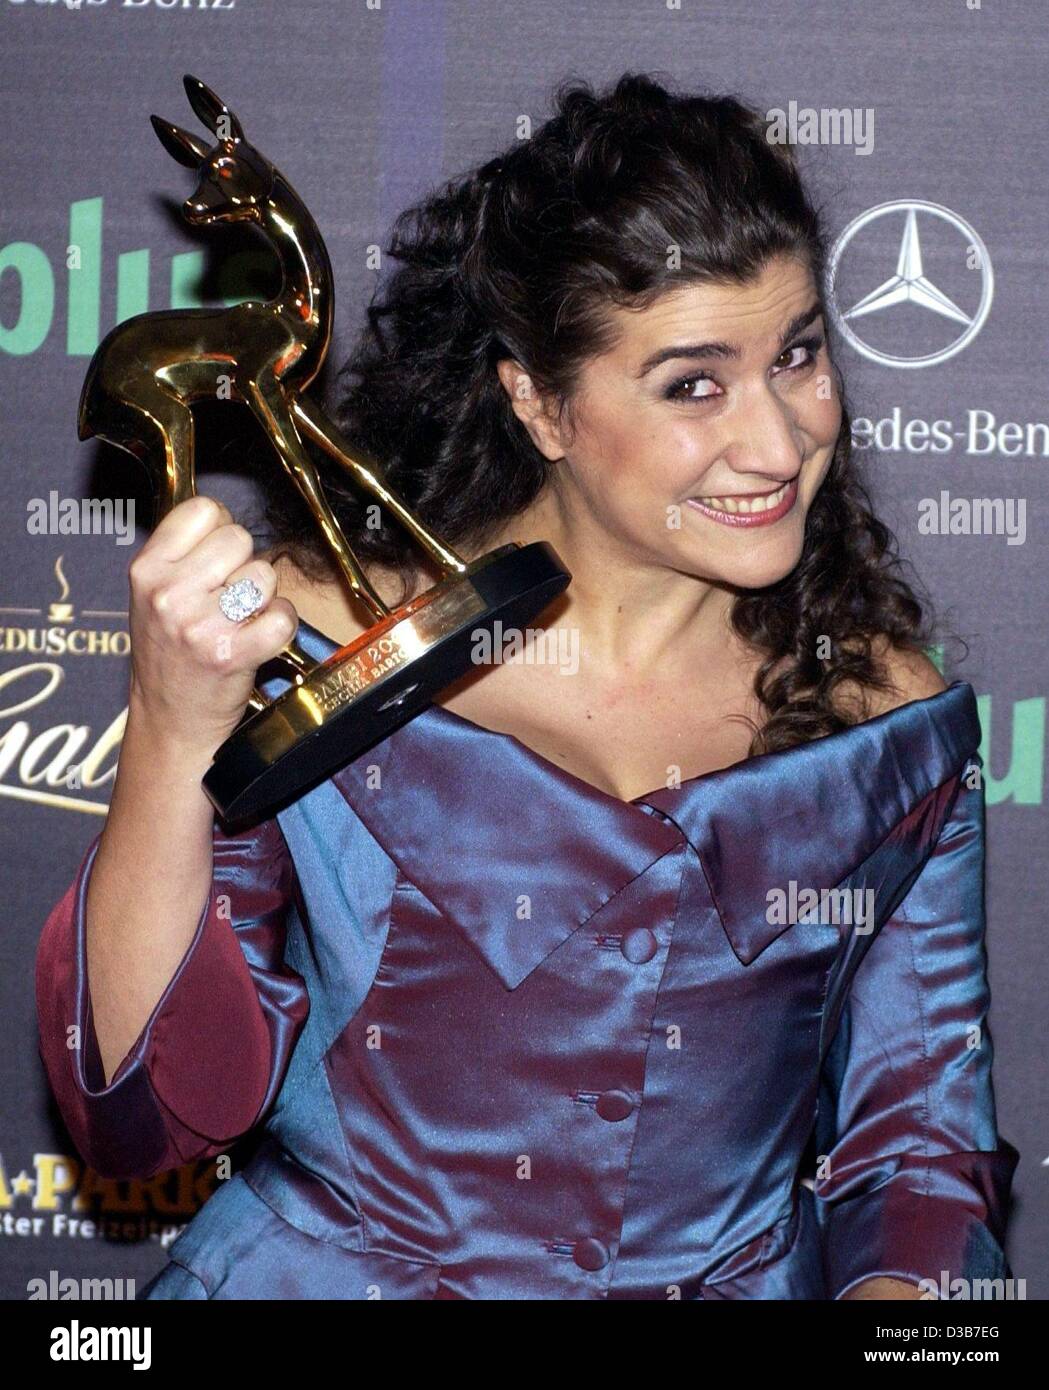 (Dpa) - La soprano italiana Cecilia Bartoli sonríe mientras posa con el premio Bambi ella ganó en la categoría de "Música Clásica" en los Bambi award show en el Estrel Convention Center de Berlín, 21 de noviembre de 2002. Unos 1.000 invitados asistieron a la 54ª ceremonia de entrega del premio Bambi entertainment, cuyo Foto de stock